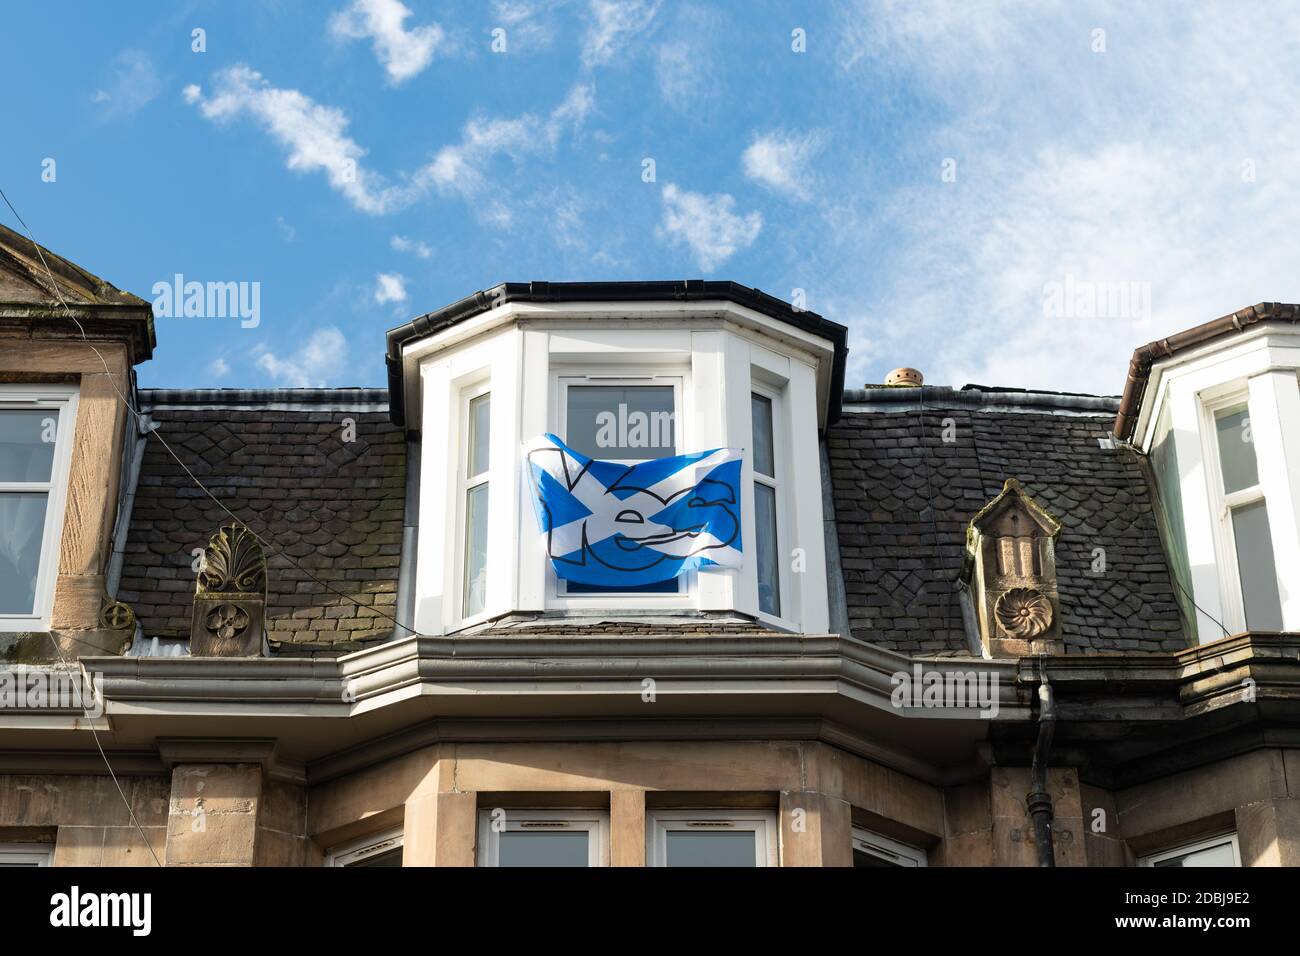 Scottish Independence oui Saltire drapeau dans la maison fenêtre à Stirling, Ecosse, Royaume-Uni en 2020 Banque D'Images